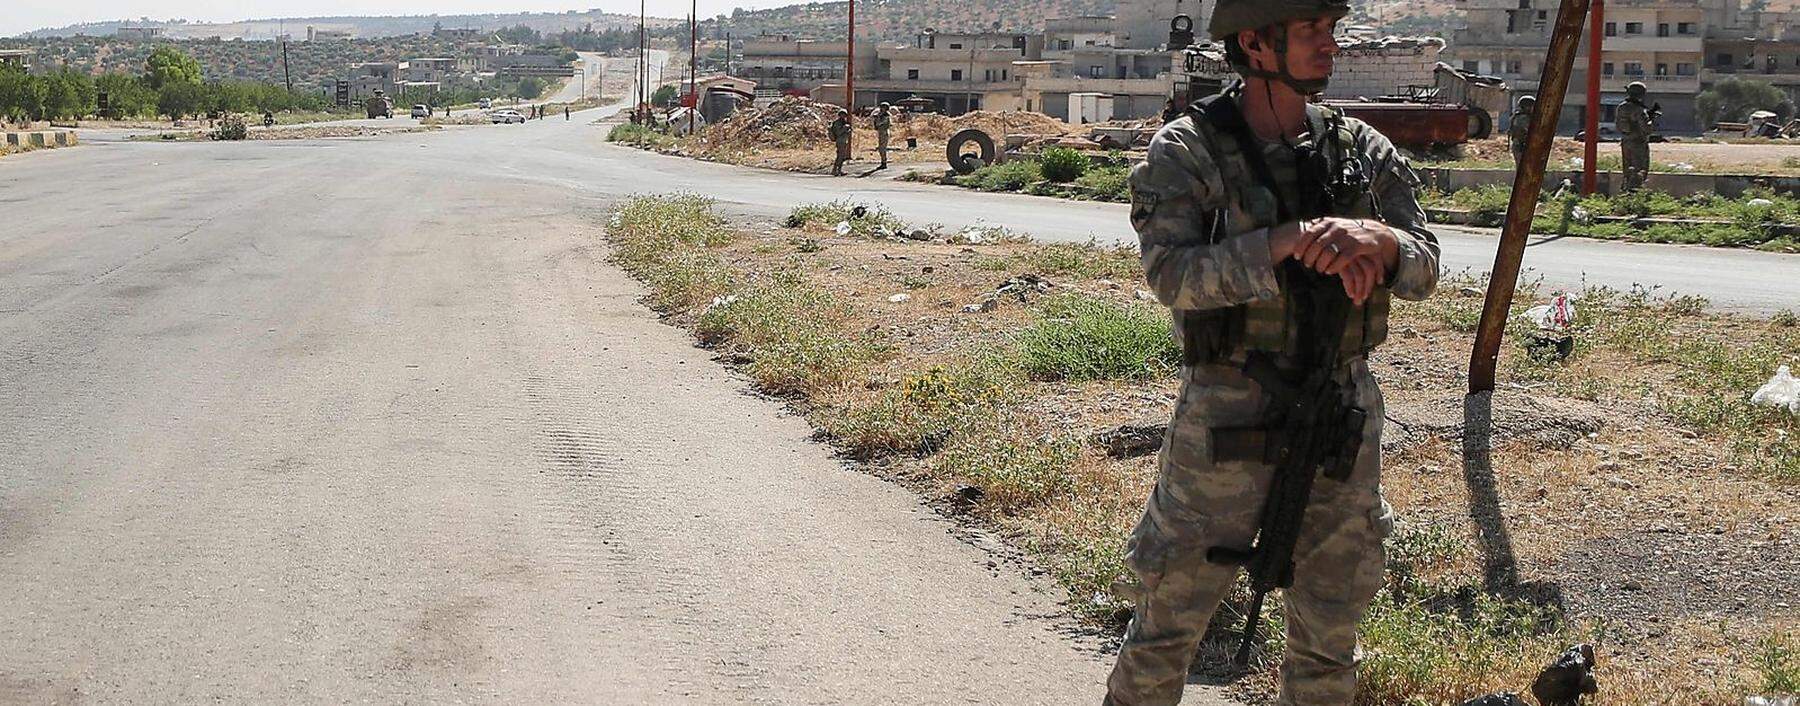 Einsatz in Nordsyrien. Ein türkischer Soldat wacht an der strategisch wichtigen Verbindungsstraße M4.